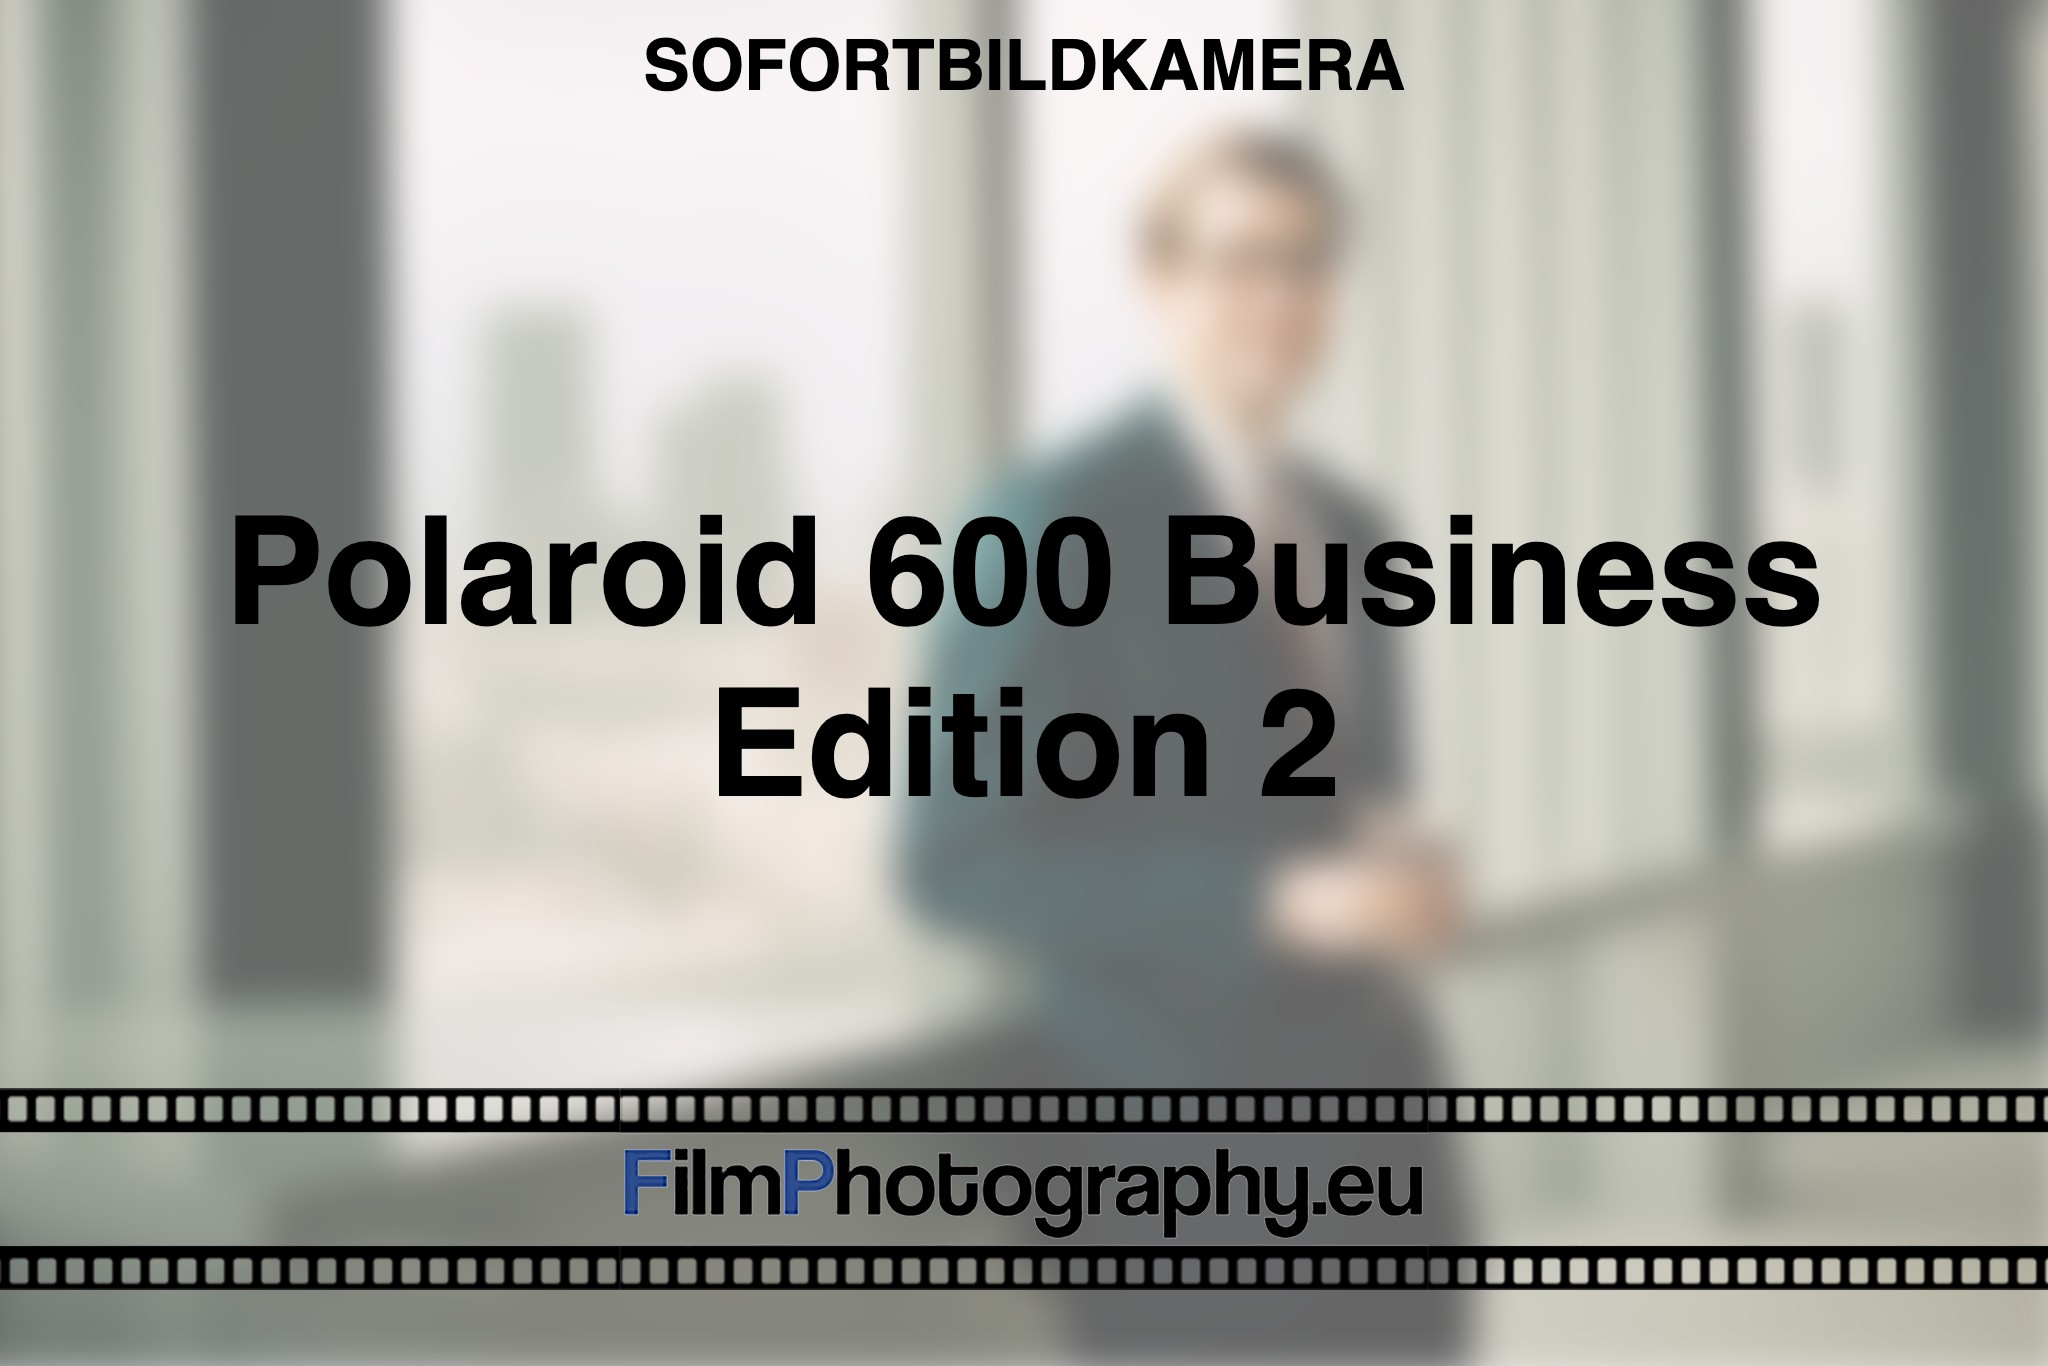 polaroid-600-business-edition-2-sofortbildkamera-fp-bnv